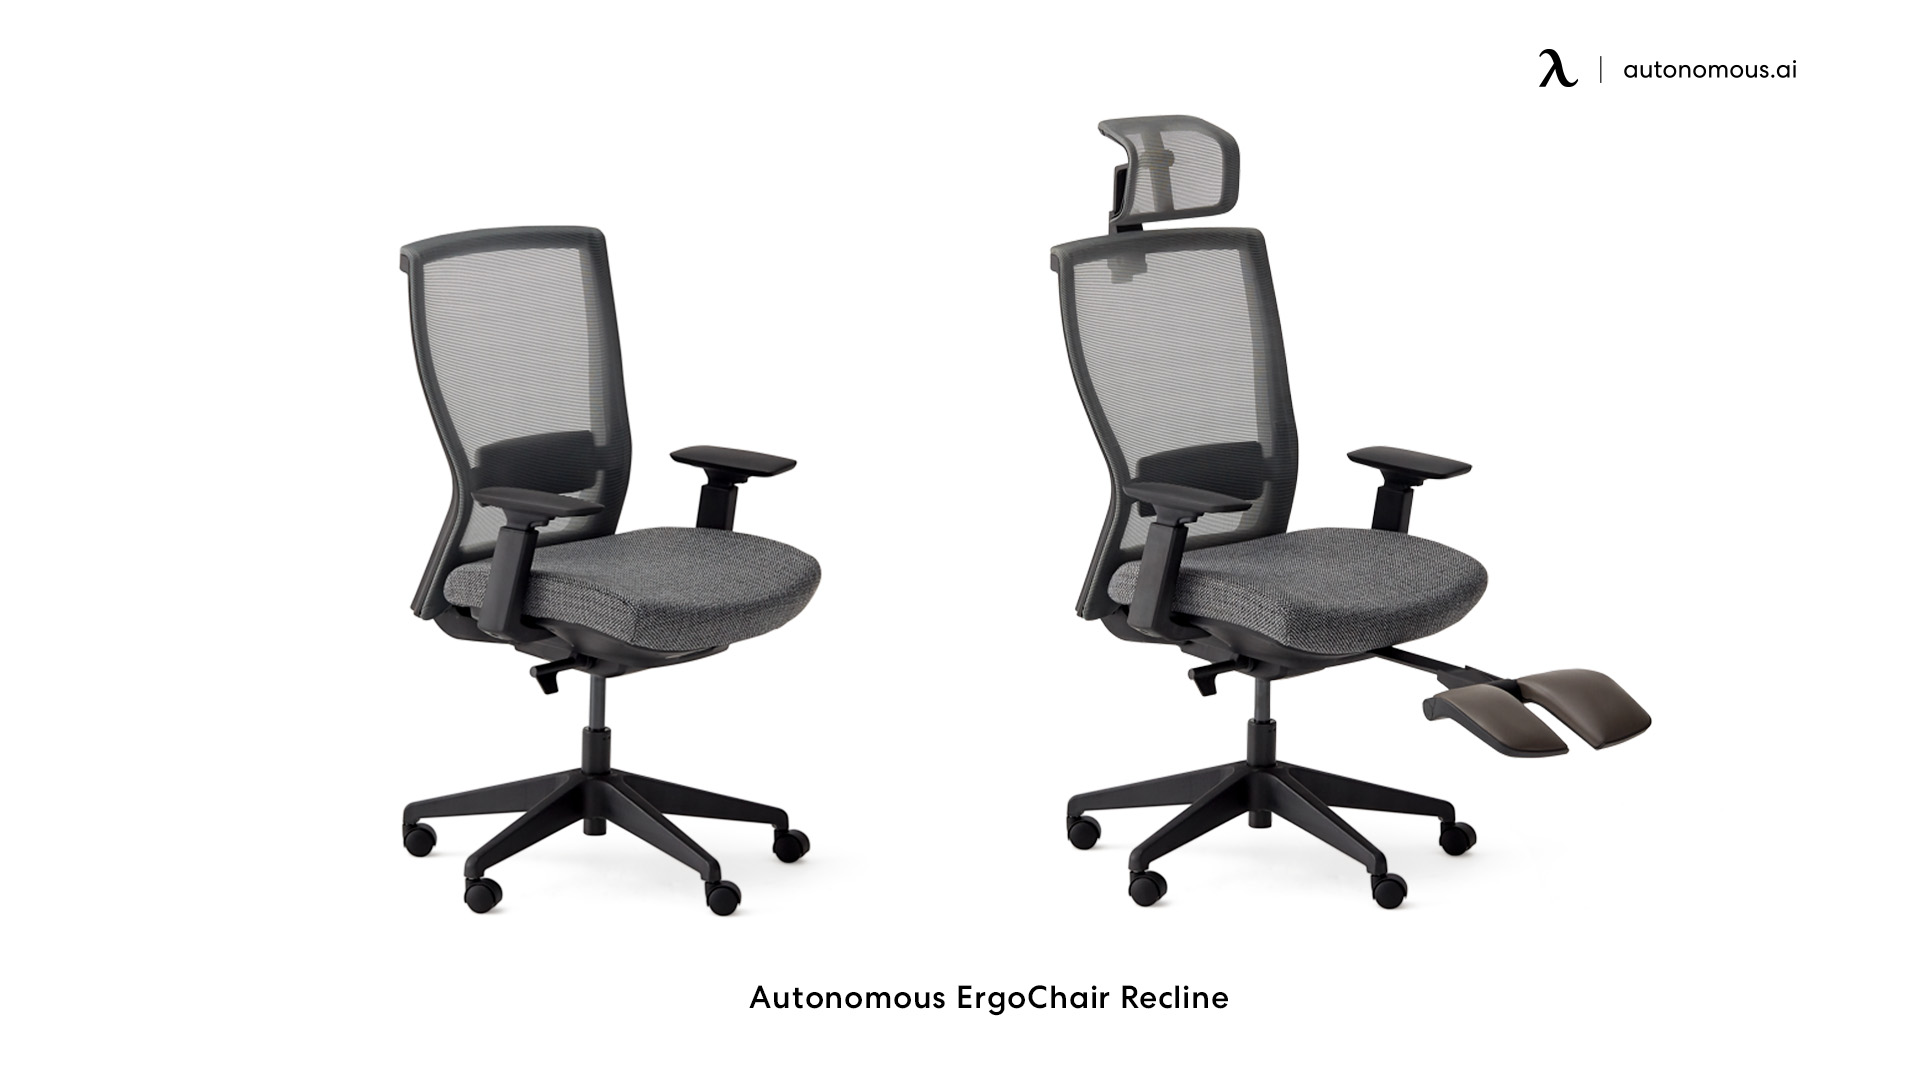 ErgoChair Recline comfortable home office chair